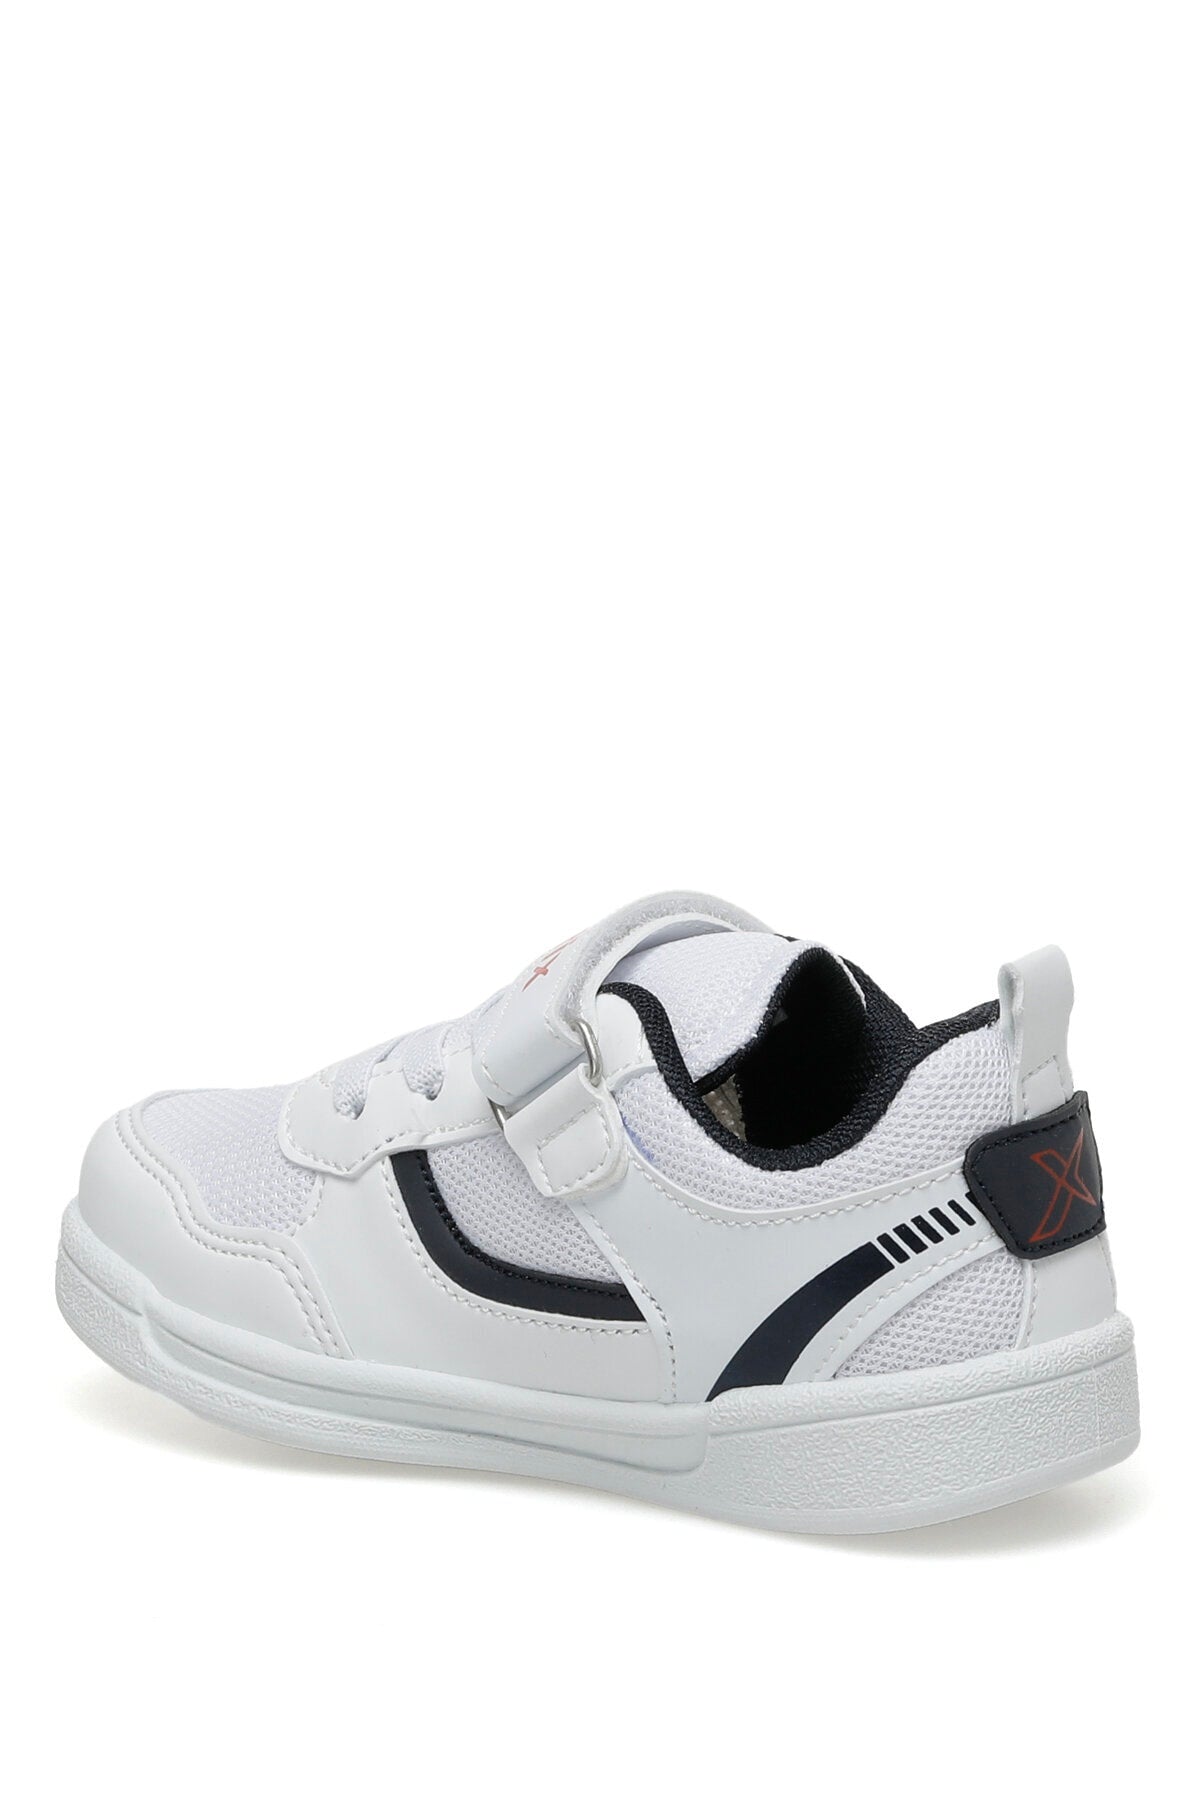 Hornet J Tx 3fx White Boys Sneaker